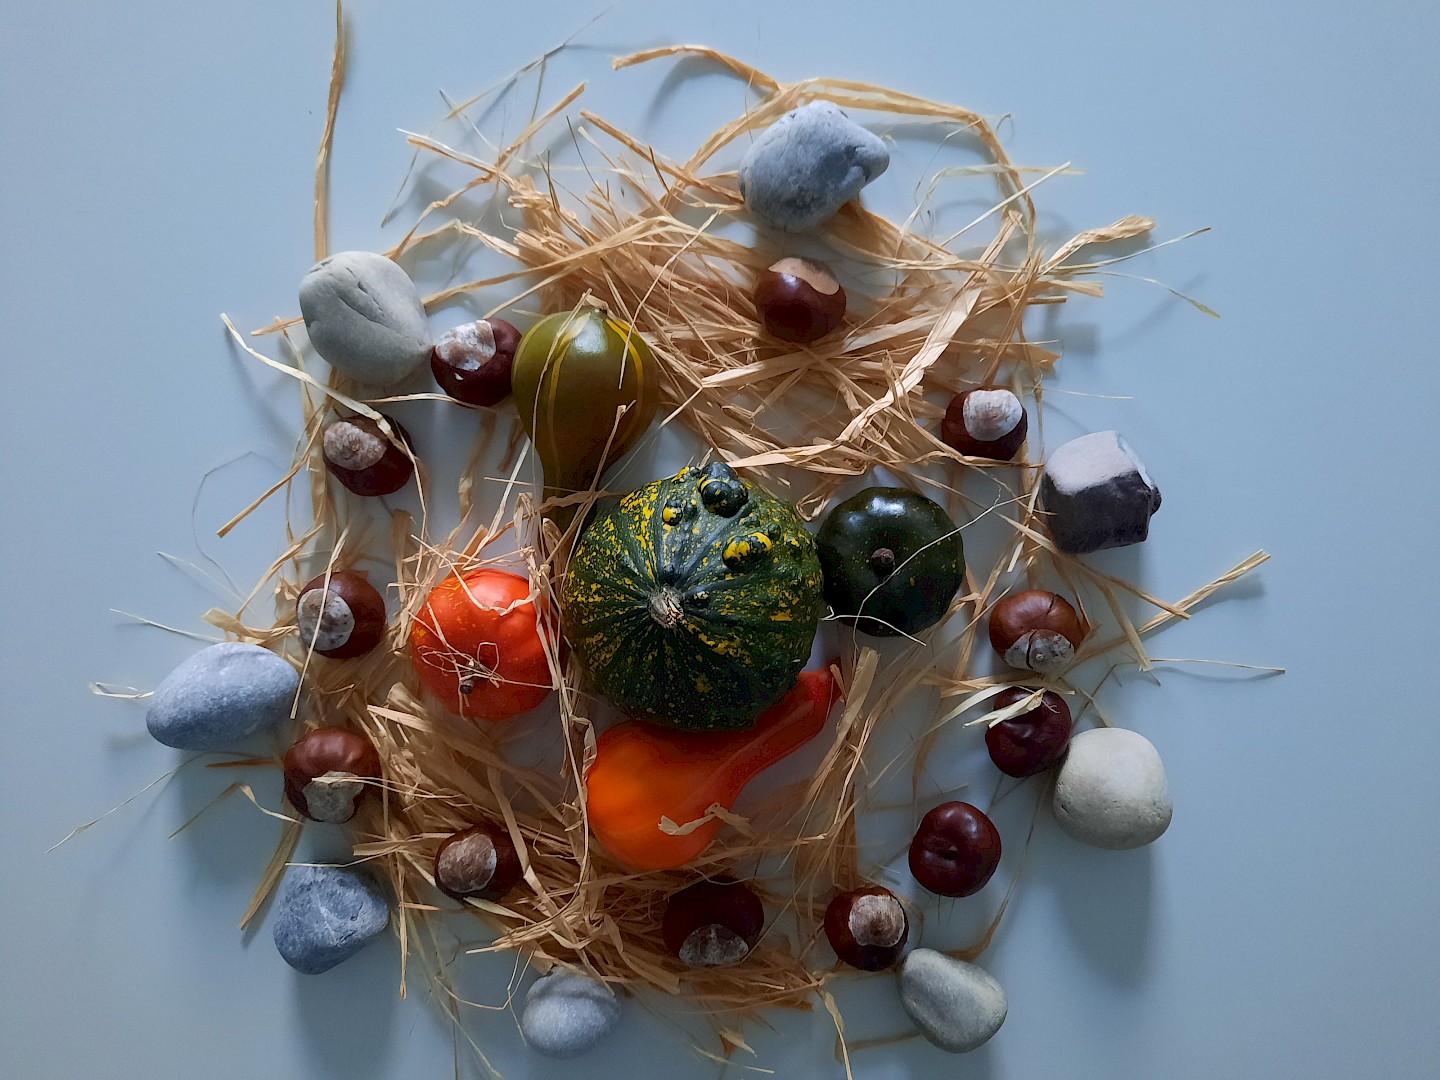 Mandala aus Raffia, Steinen und Zierkürbissen.
Rosine Lambin, 2022